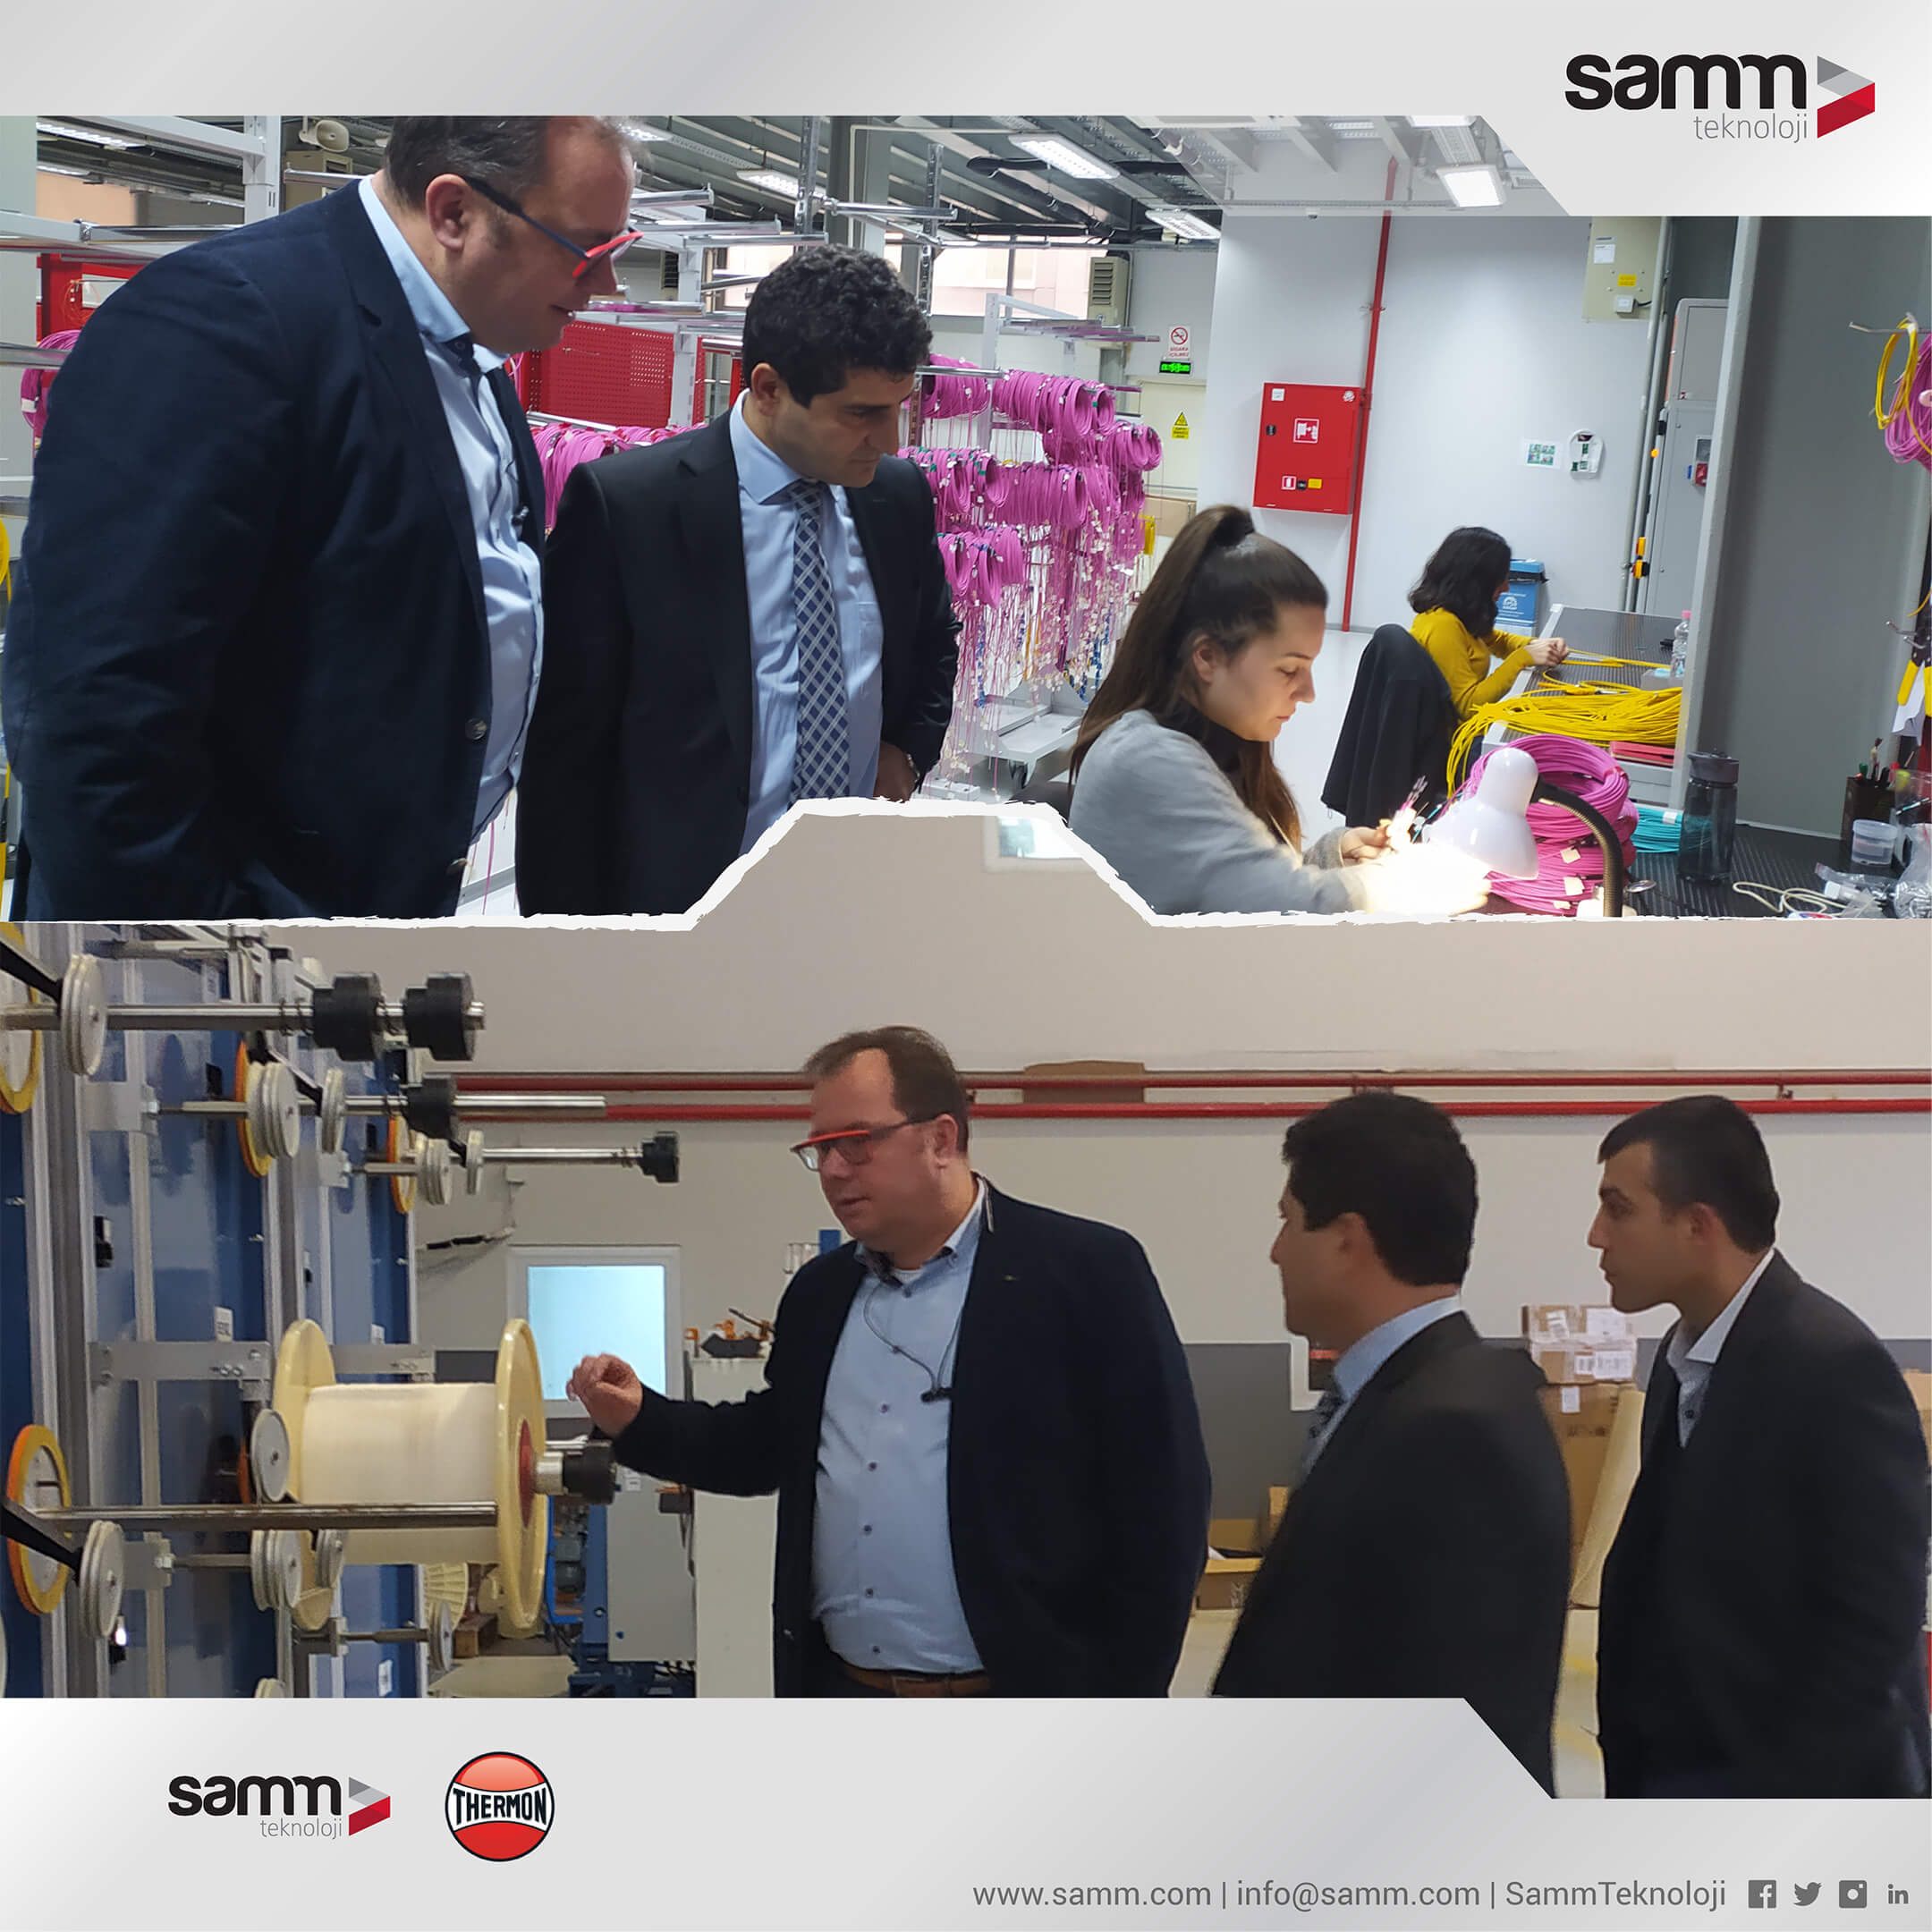 SAMM Teknoloji, Thermon Türkiye Resmi Distribütörü ve Mühendislik Merkezi 2